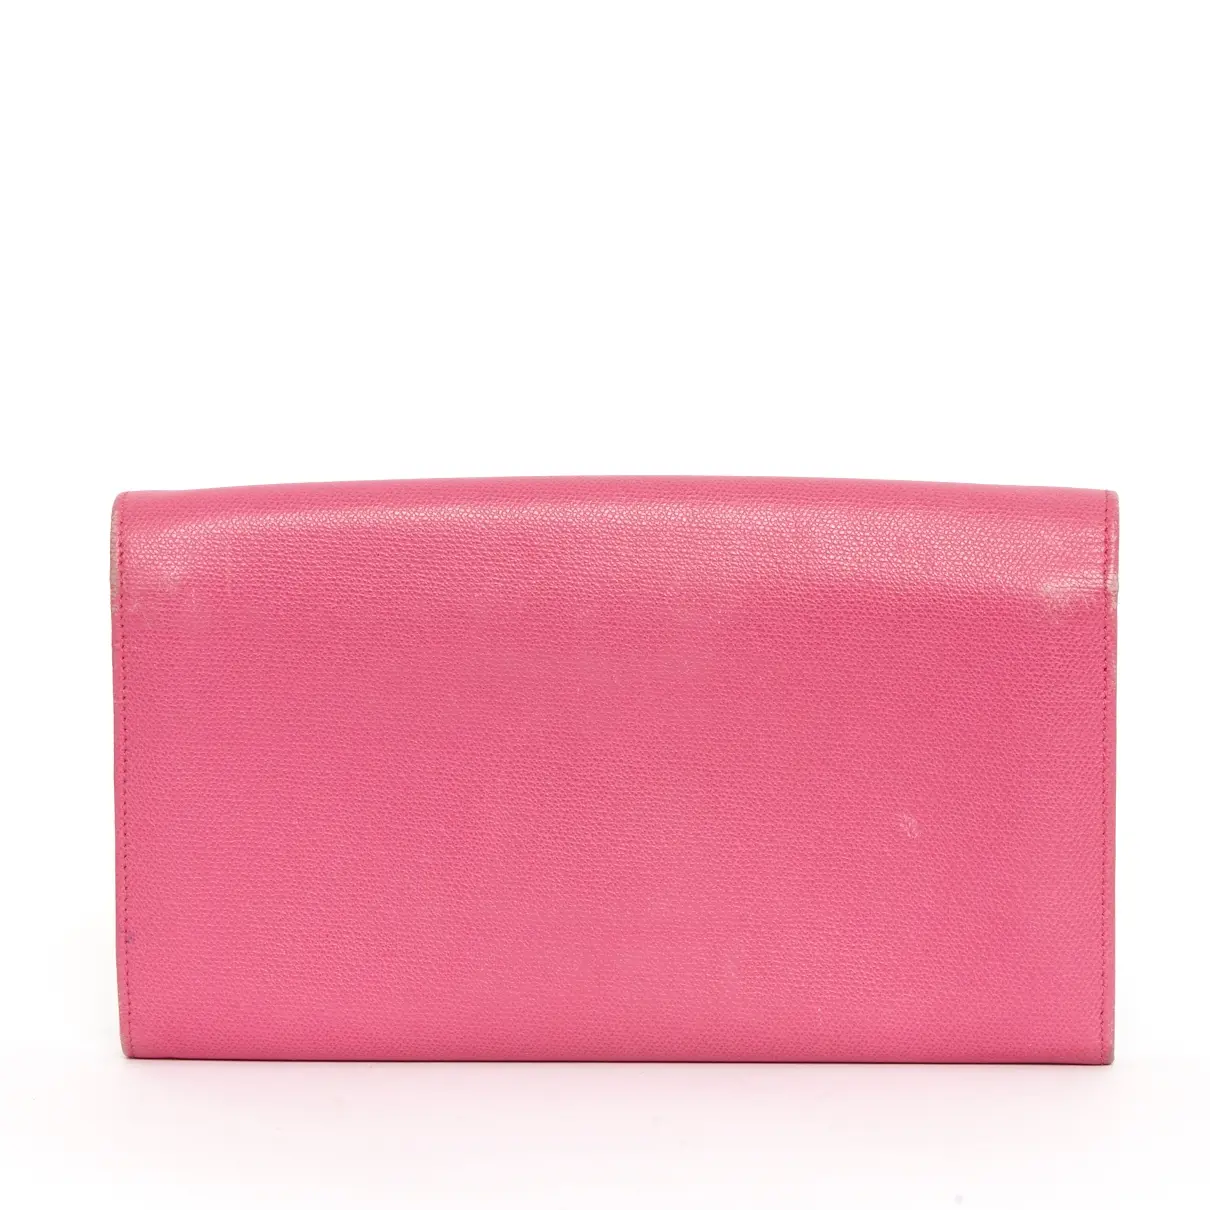 Buy Smythe Leather purse online